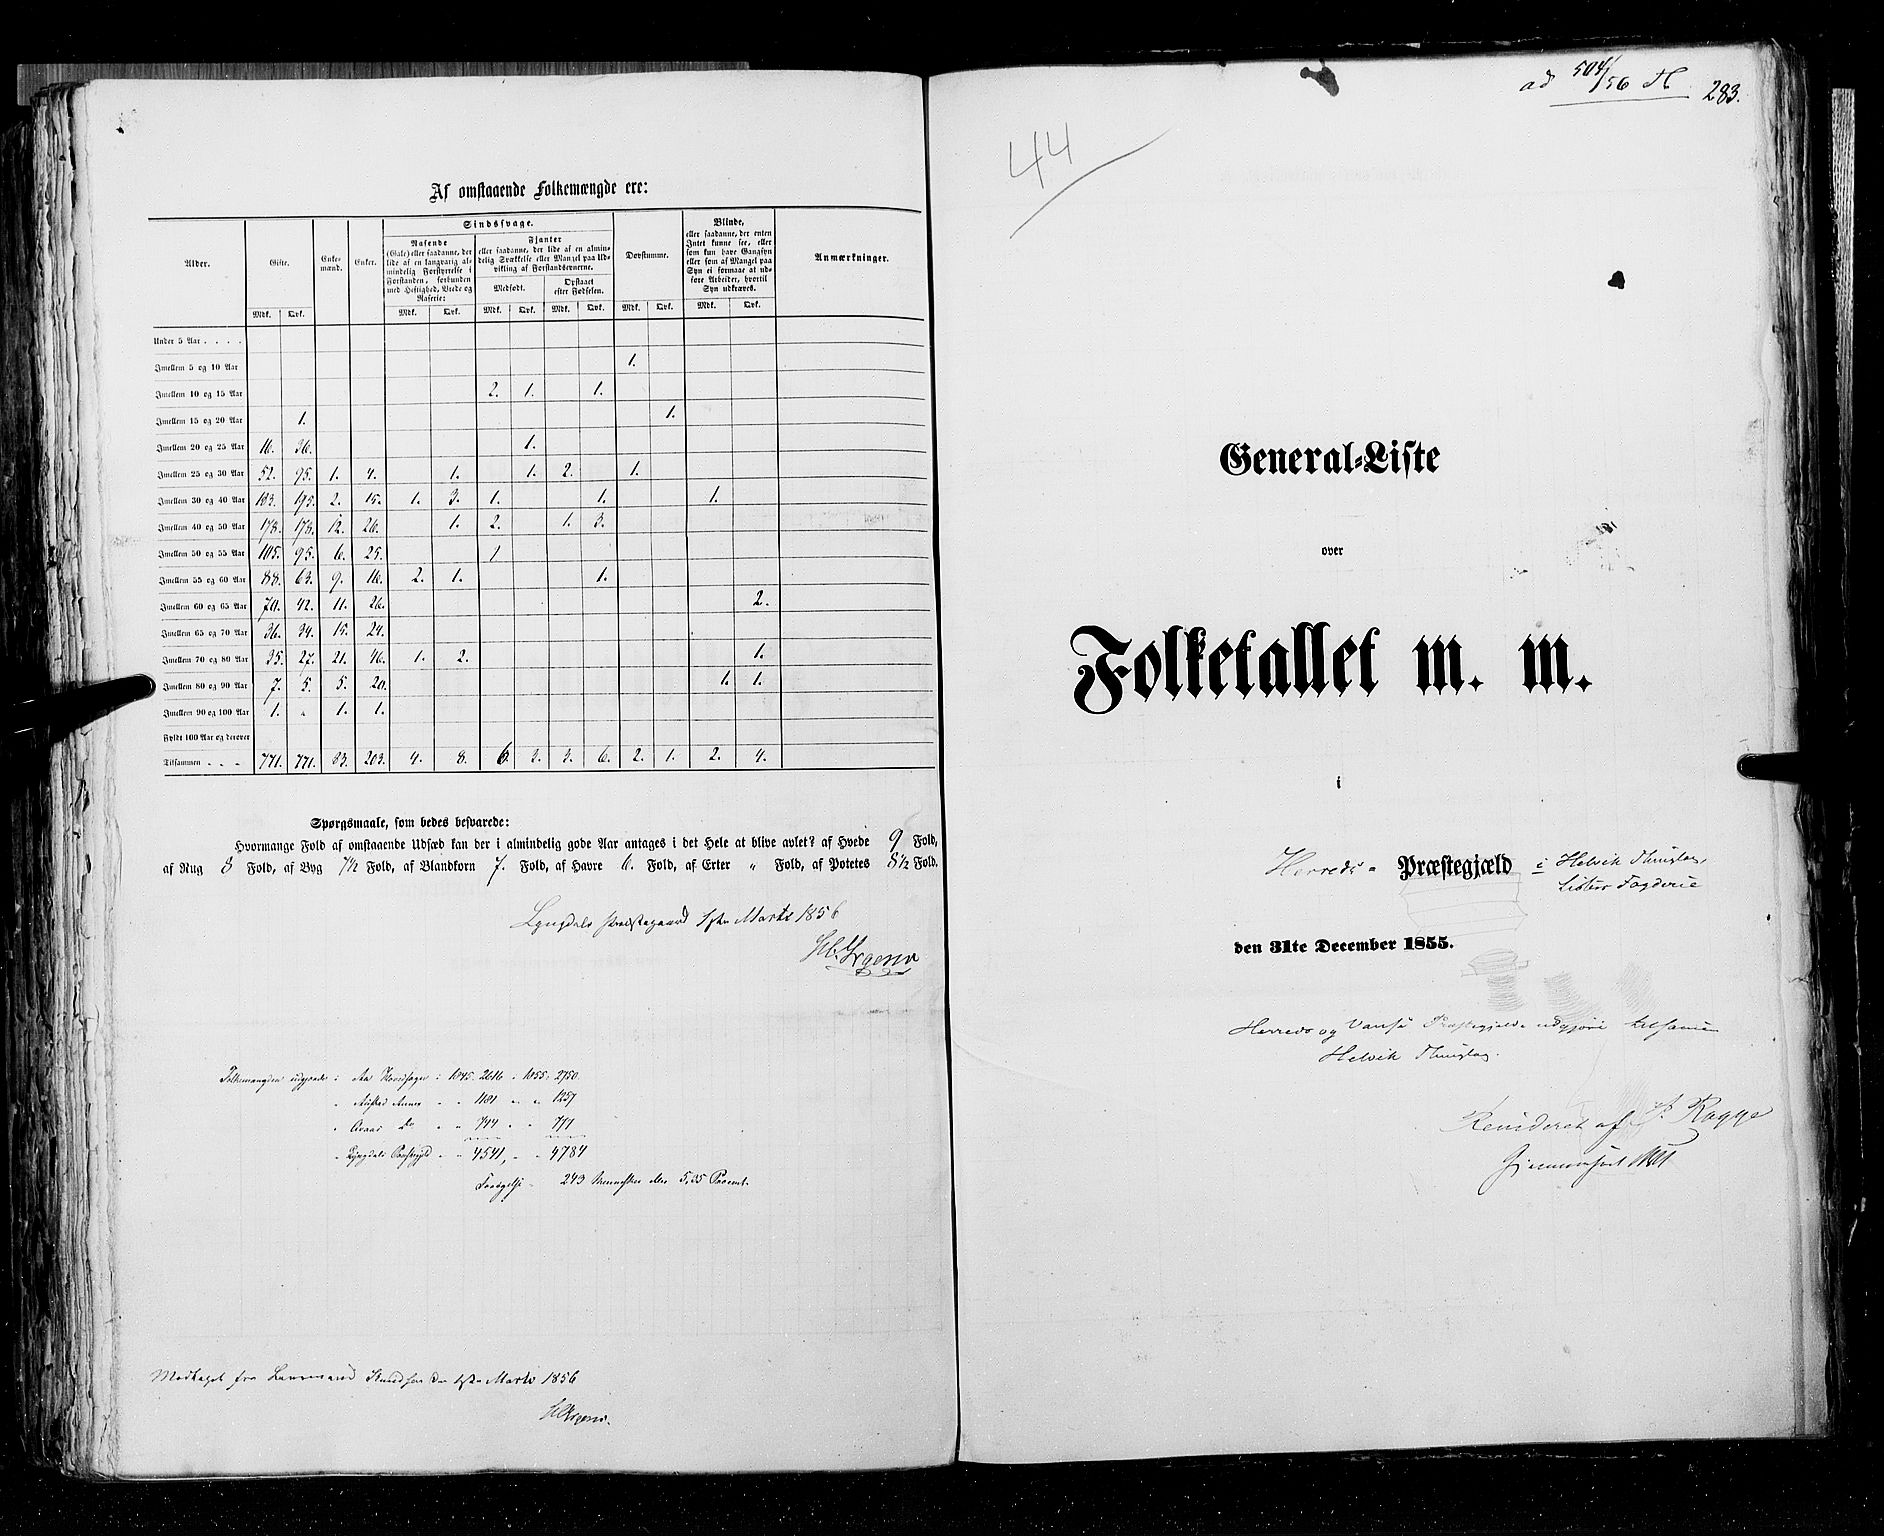 RA, Census 1855, vol. 3: Bratsberg amt, Nedenes amt og Lister og Mandal amt, 1855, p. 283